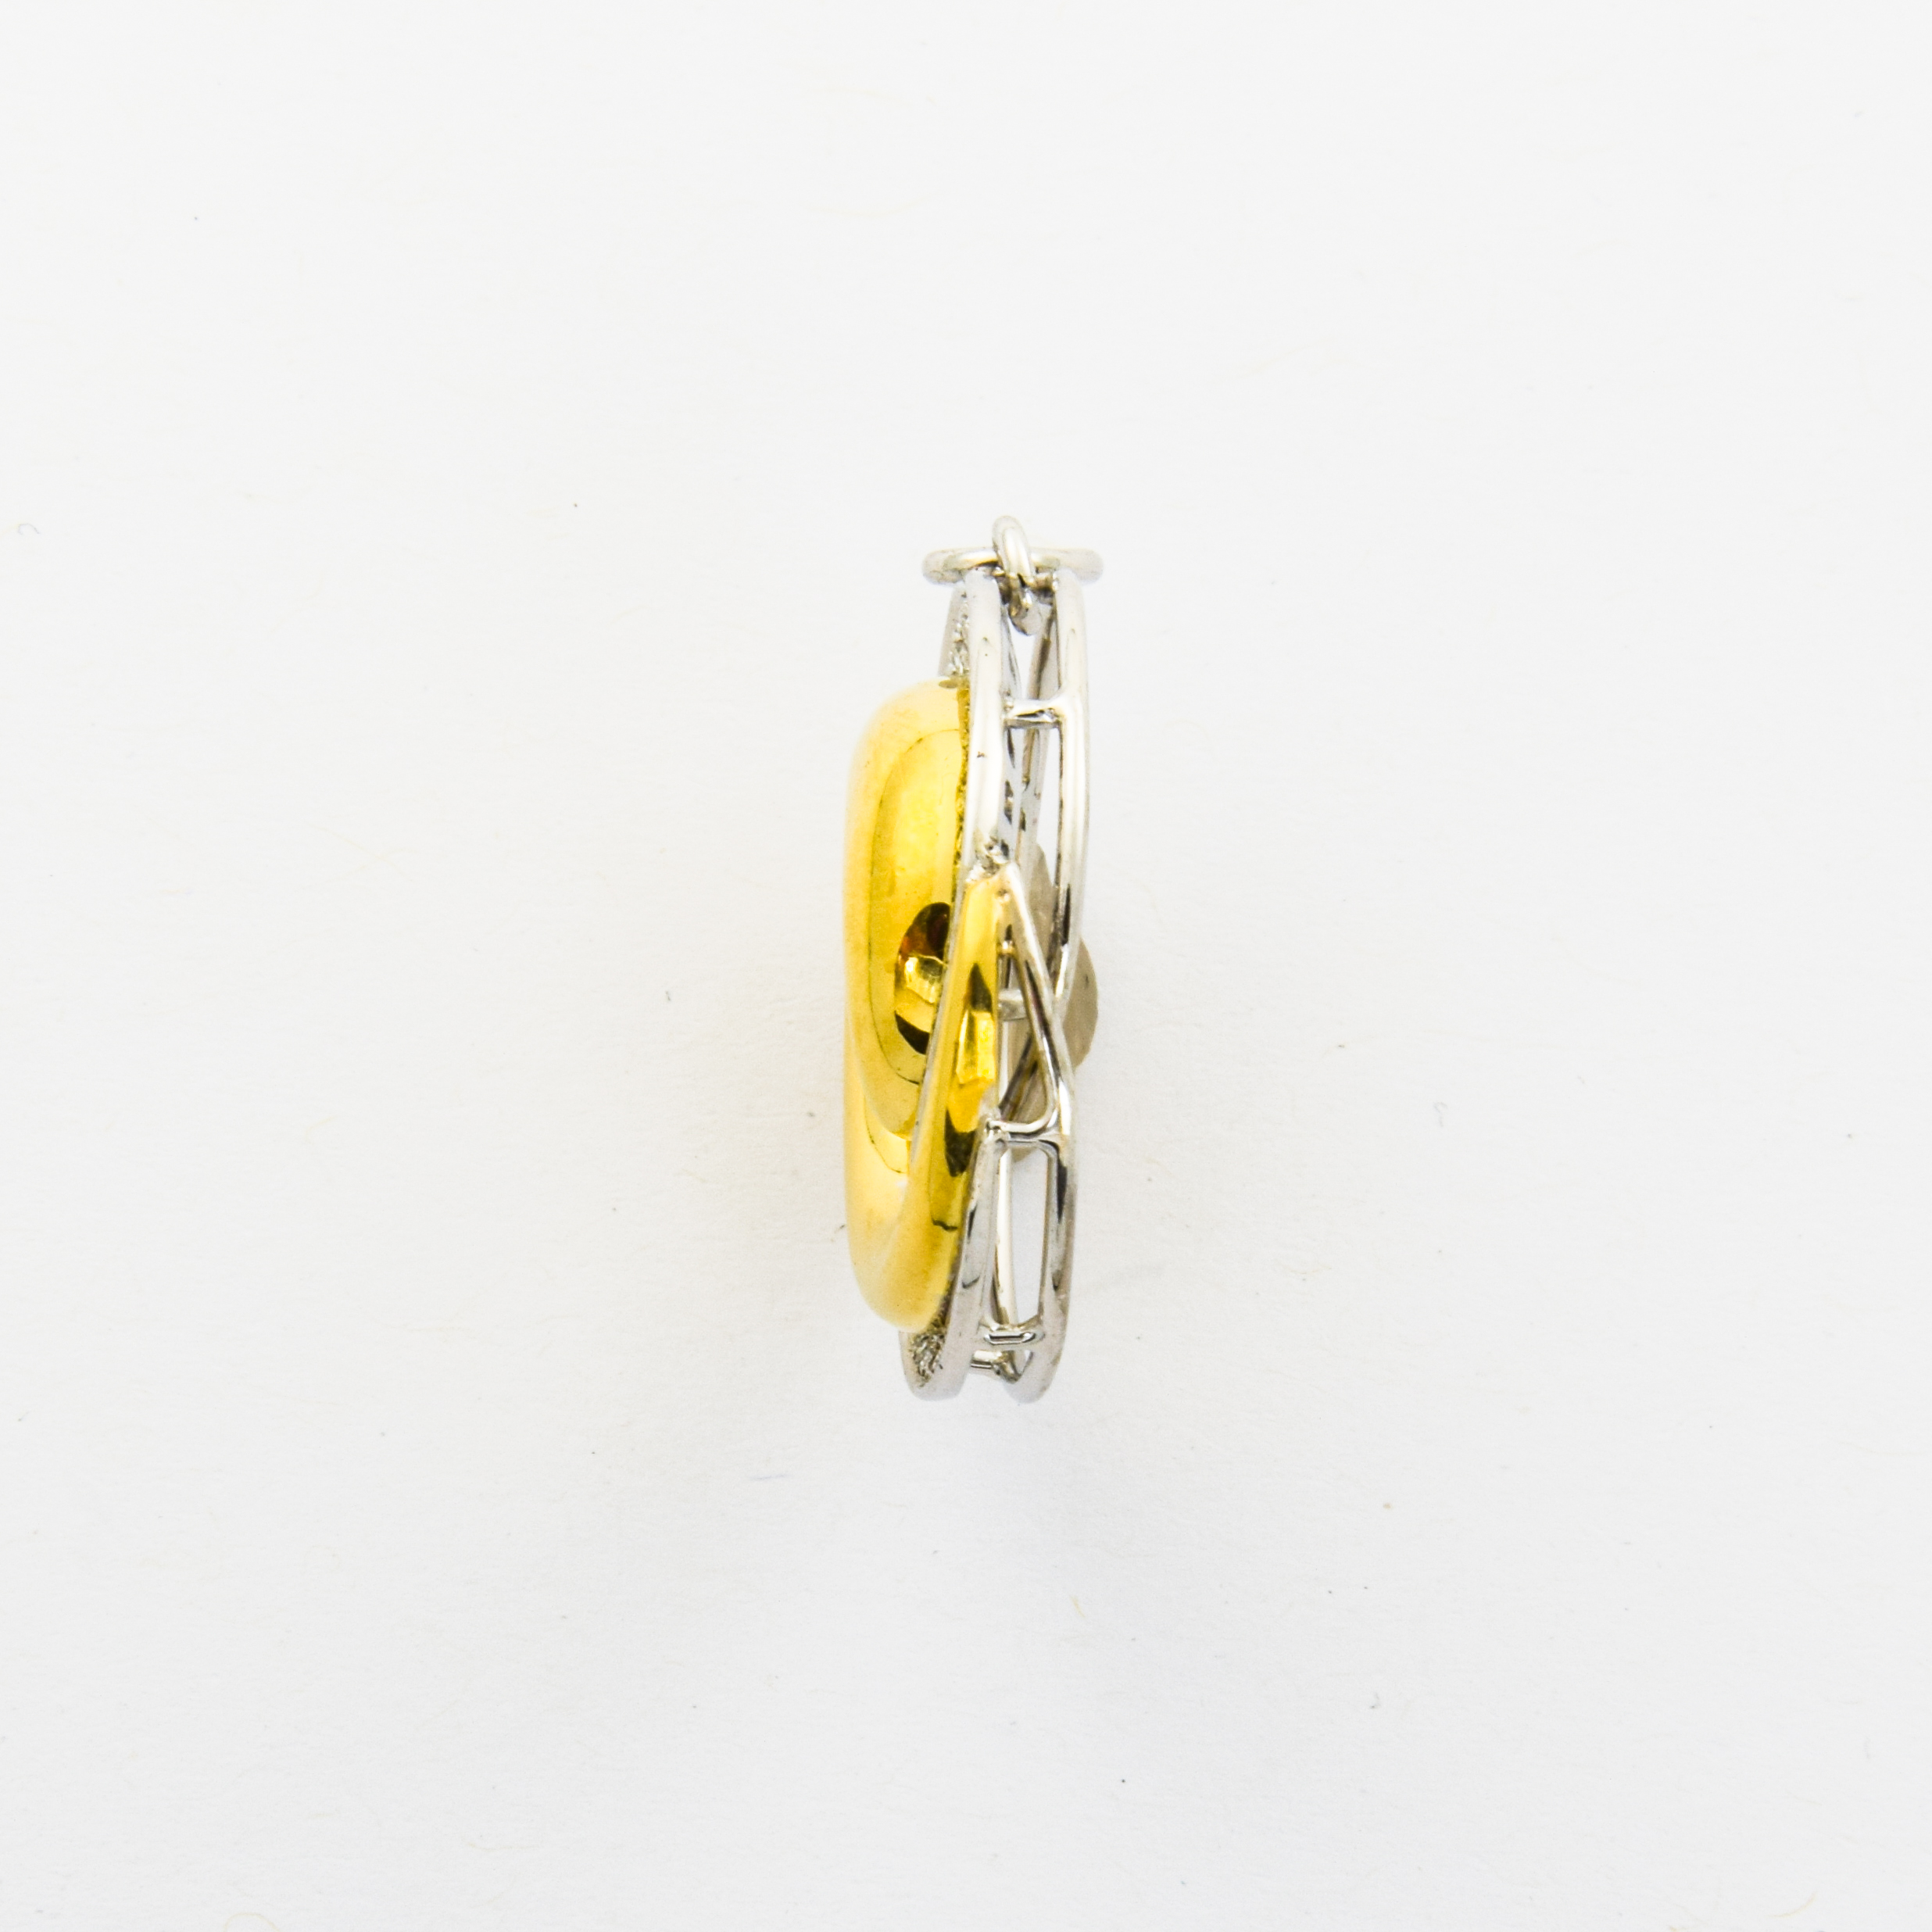 Anhänger aus 750 Gelb- und Weißgold mit Diamant, nachhaltiger second hand Schmuck perfekt aufgearbeitet